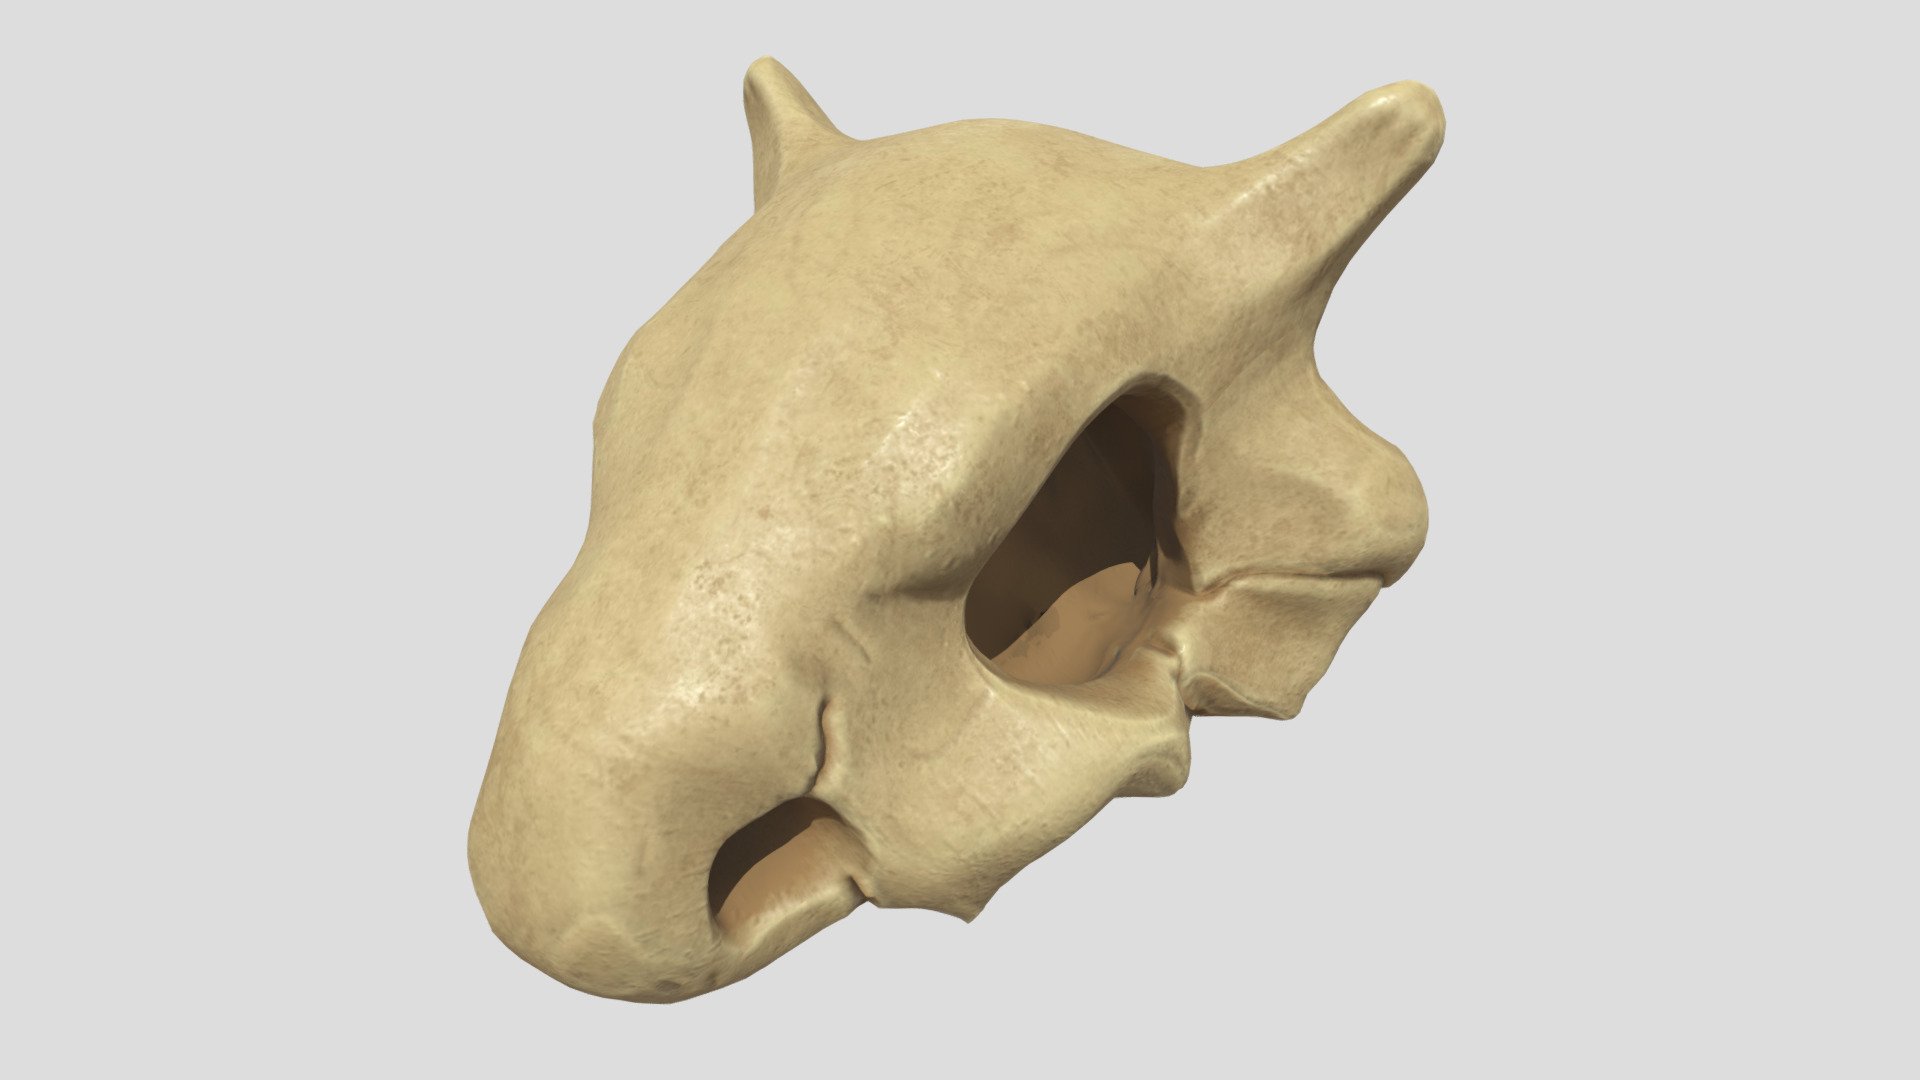 first version - Cubone mom skull - 3D model by ivan alarcon (@capivan) 3d model